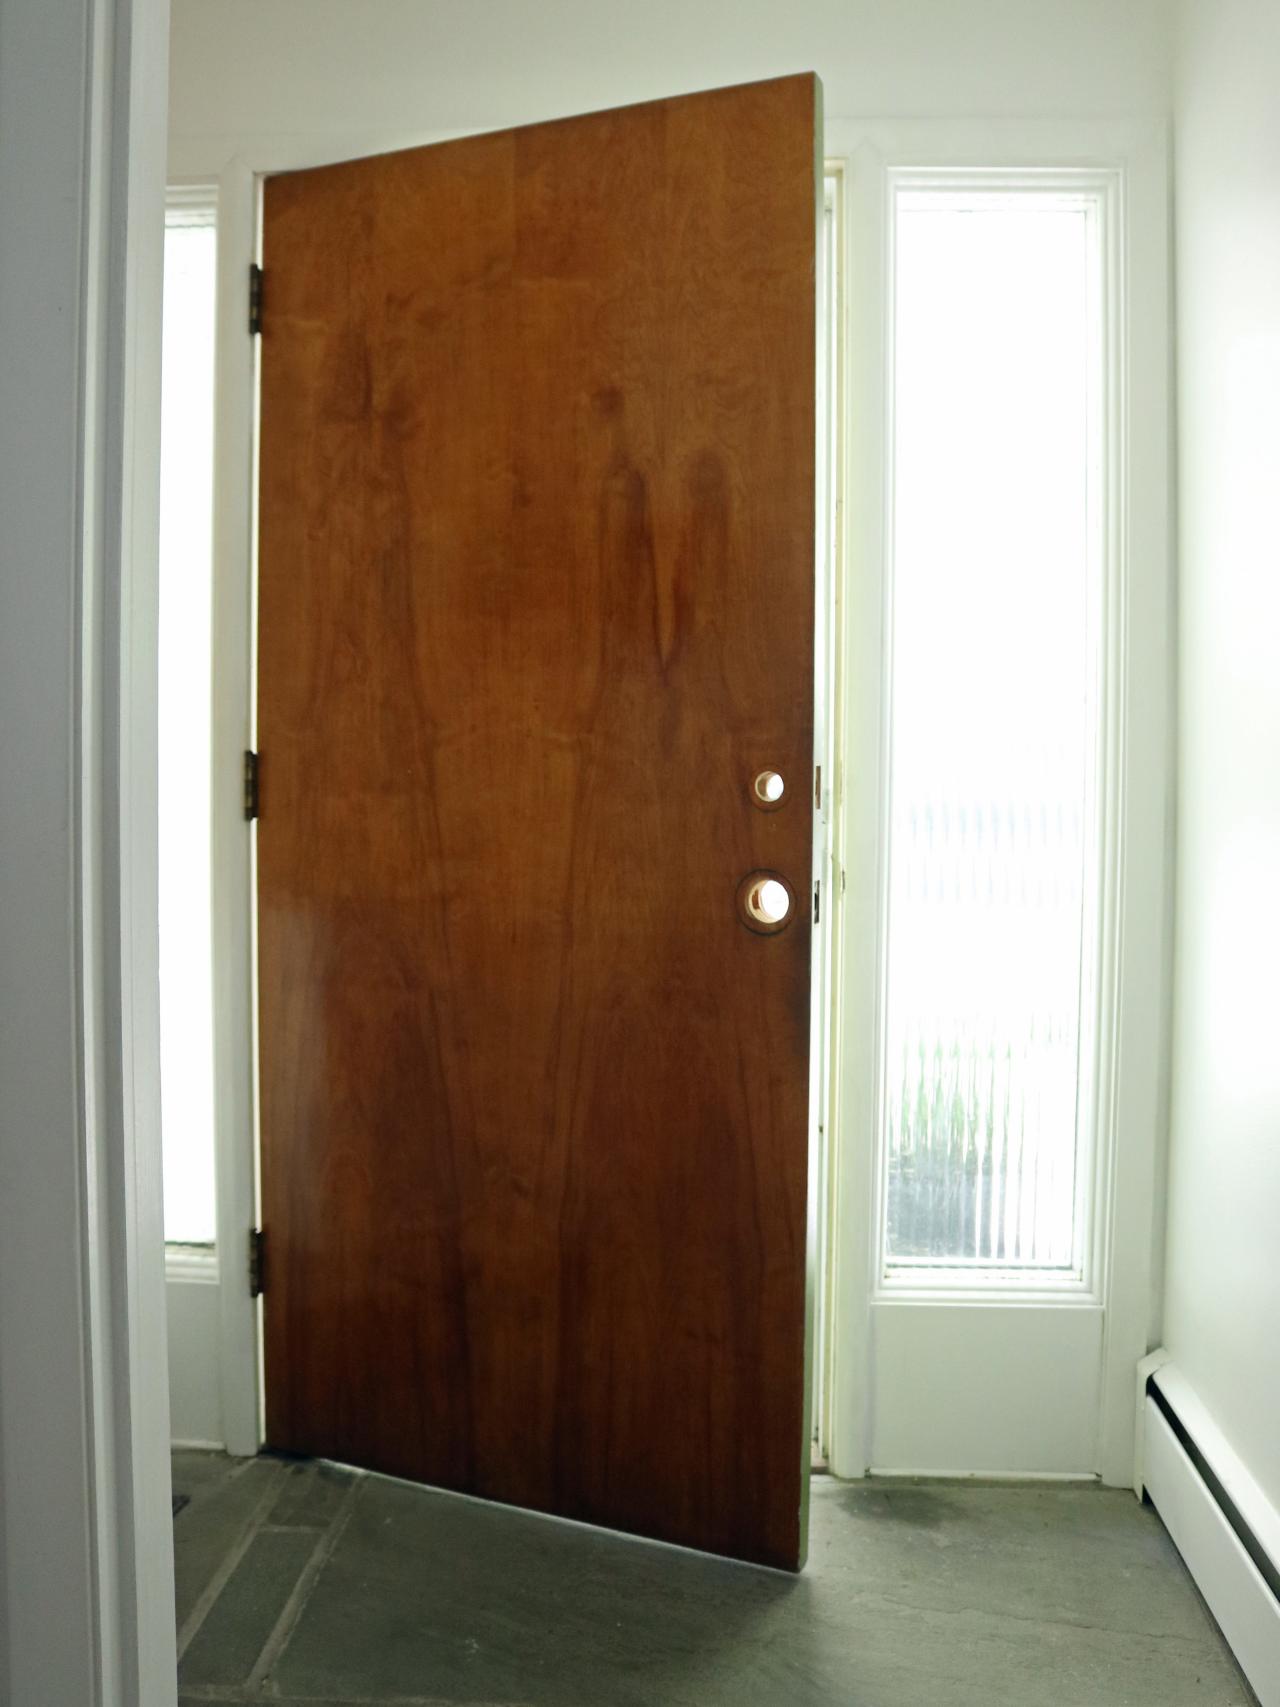 wallpaper on interior doors,door,property,automotive exterior,room,wood